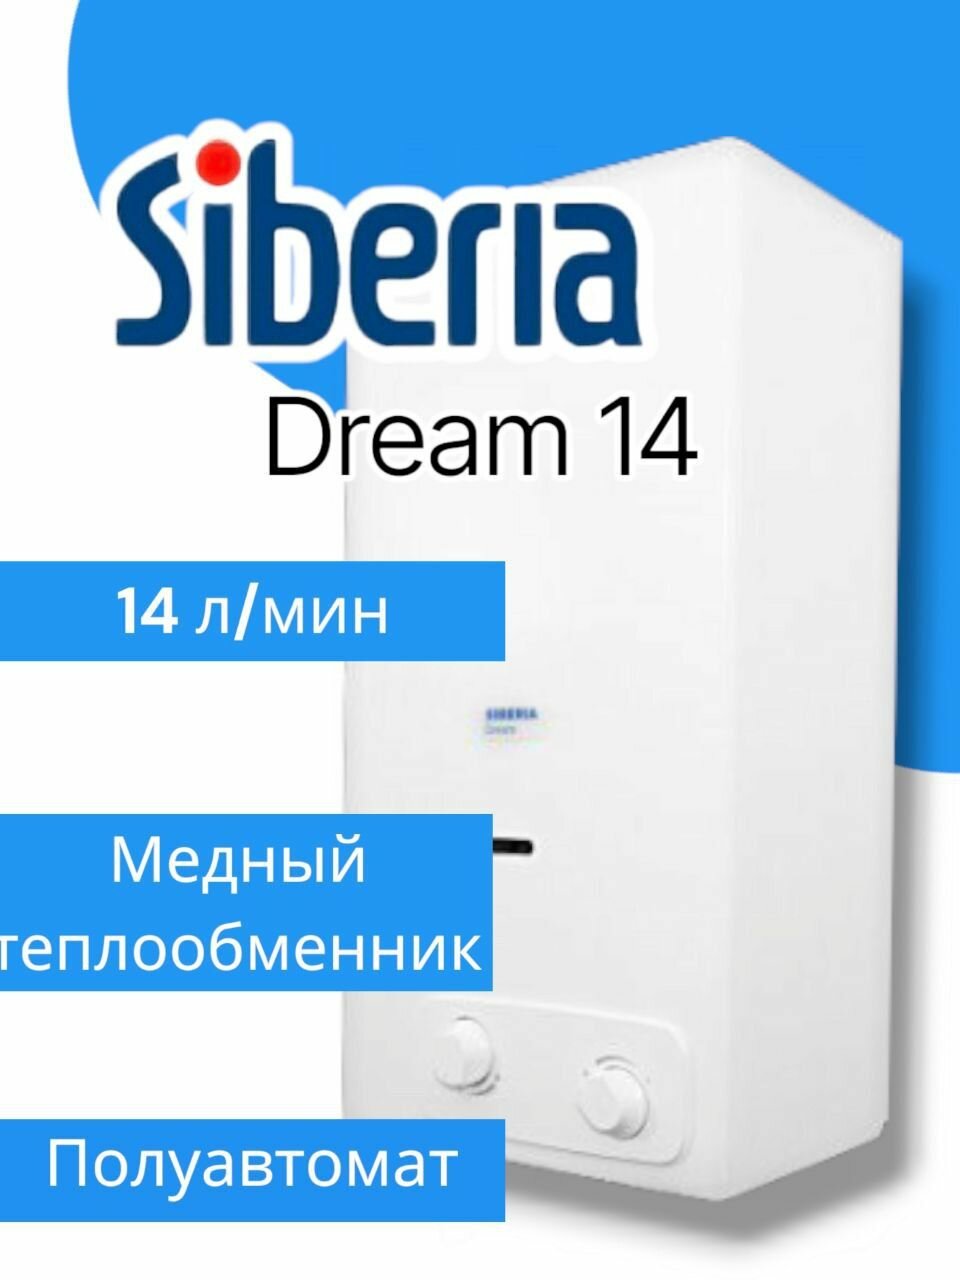 Водонагреватель газовый, газовая колонка, Siberia Dream 14 (полуавтомат, пьезорозжиг, латунная группа)